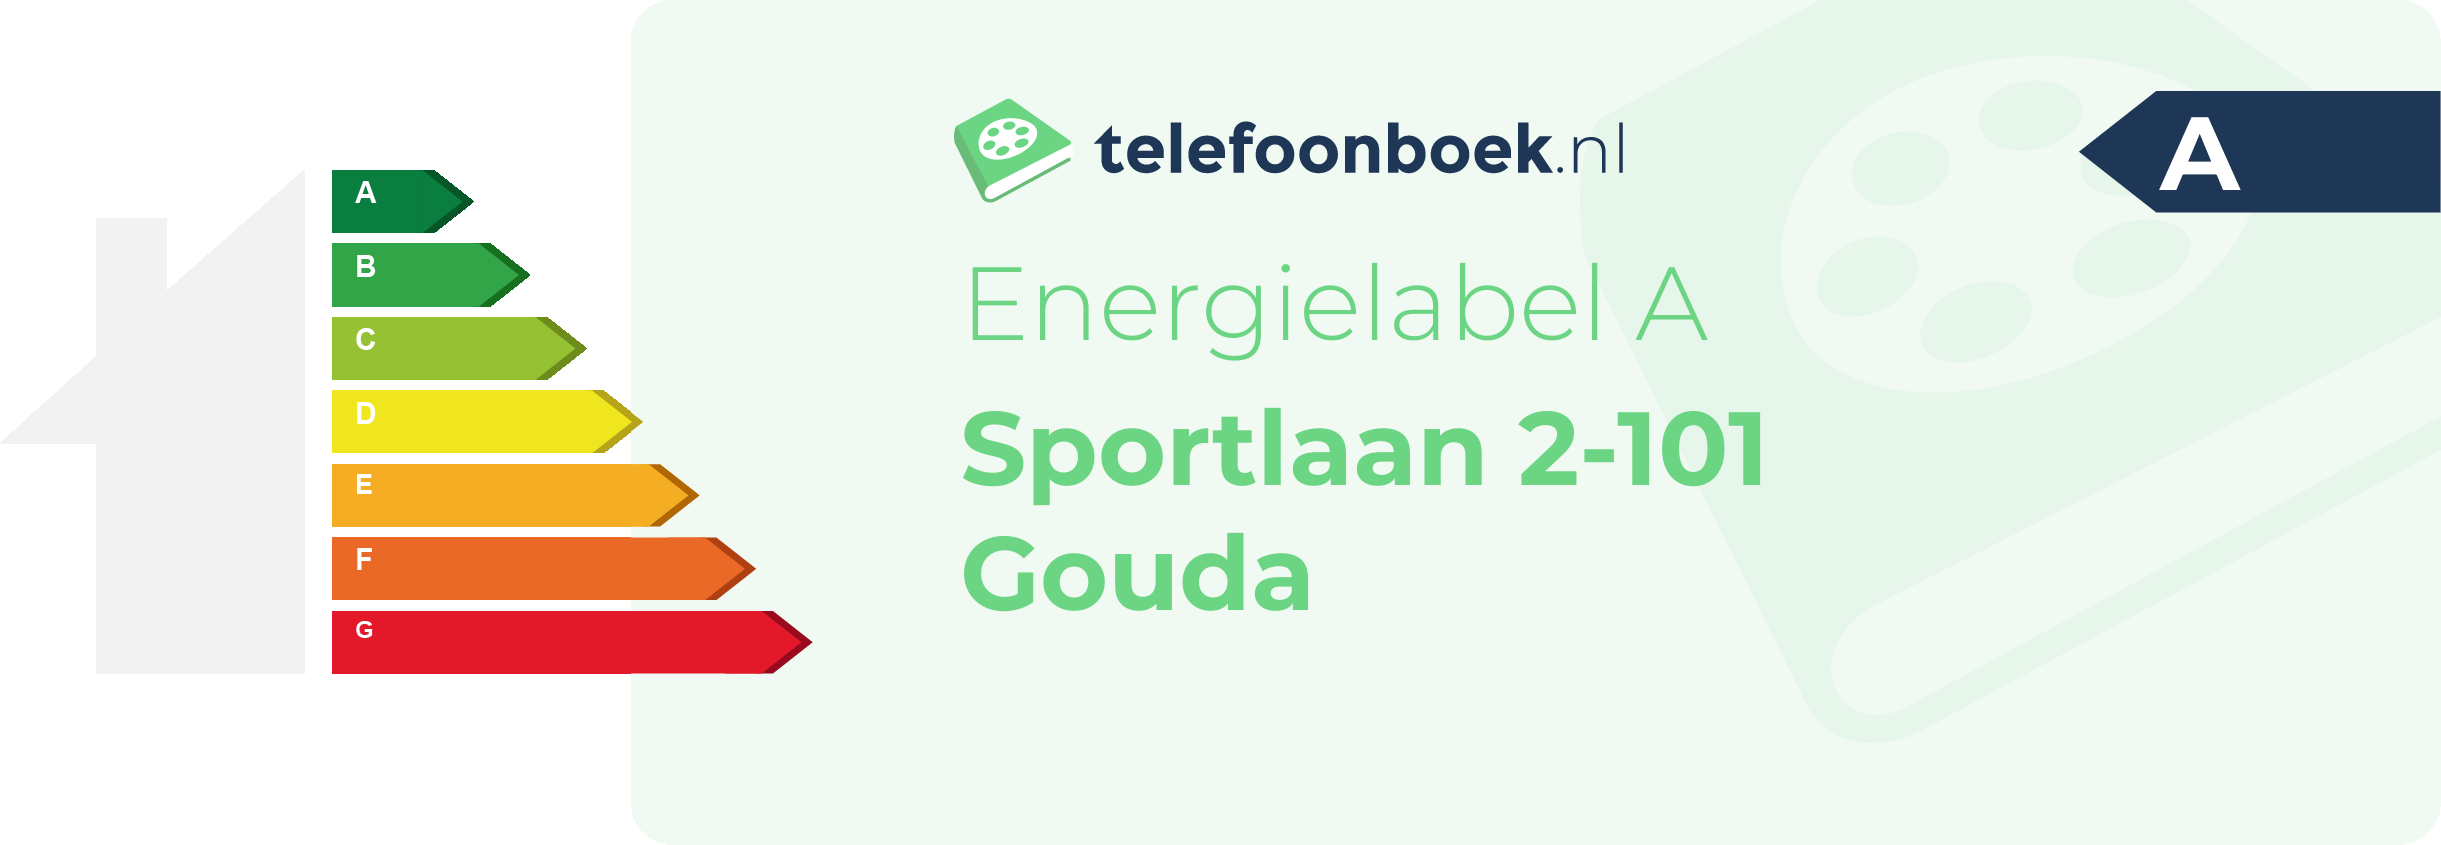 Energielabel Sportlaan 2-101 Gouda